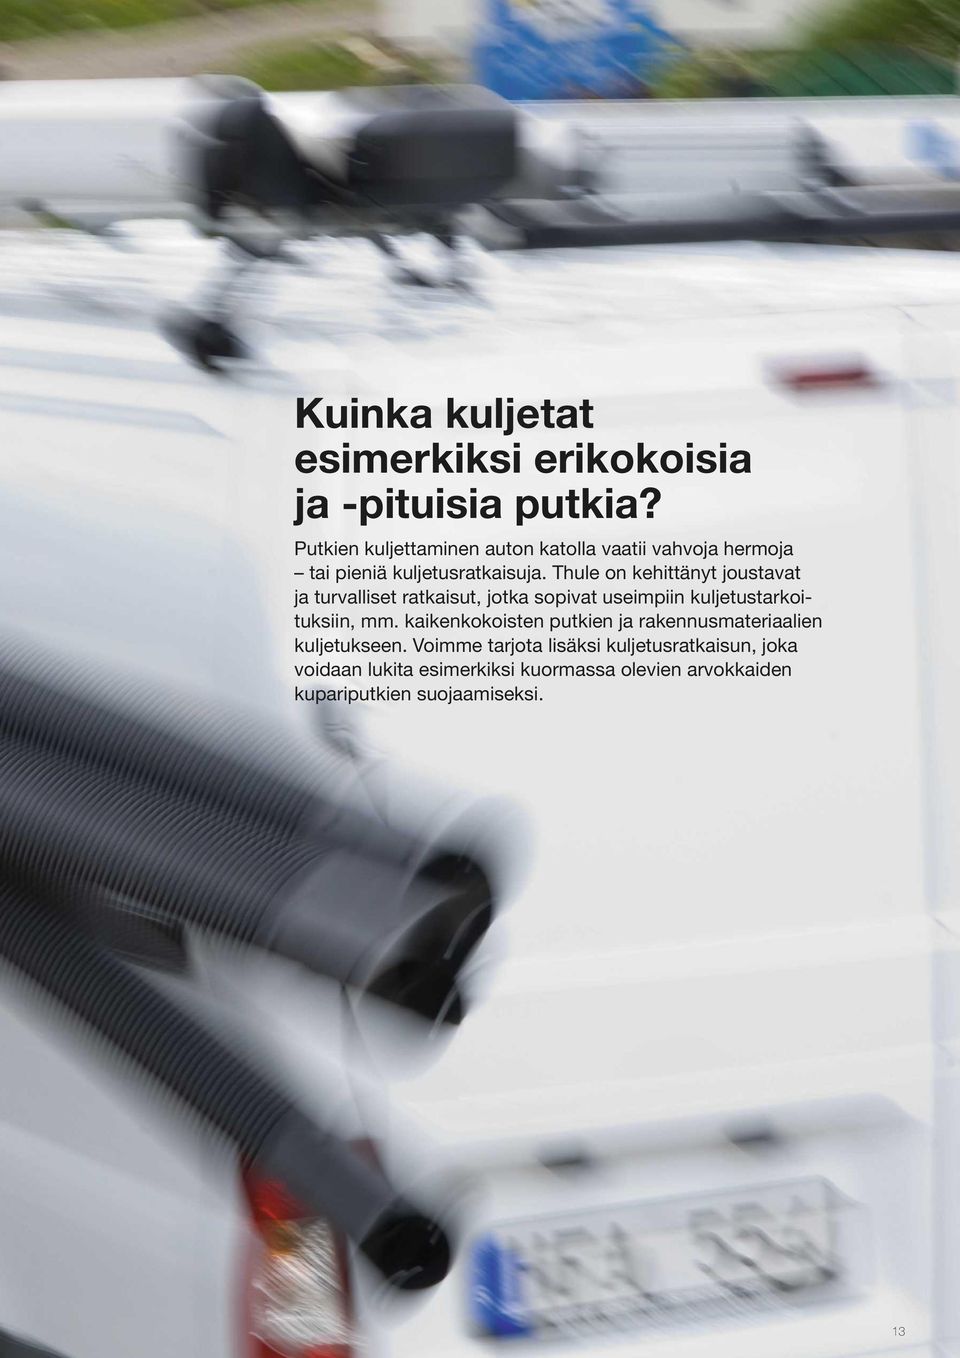 Thule on kehittänyt joustavat ja turvalliset ratkaisut, jotka sopivat useimpiin kuljetustarkoituksiin, mm.